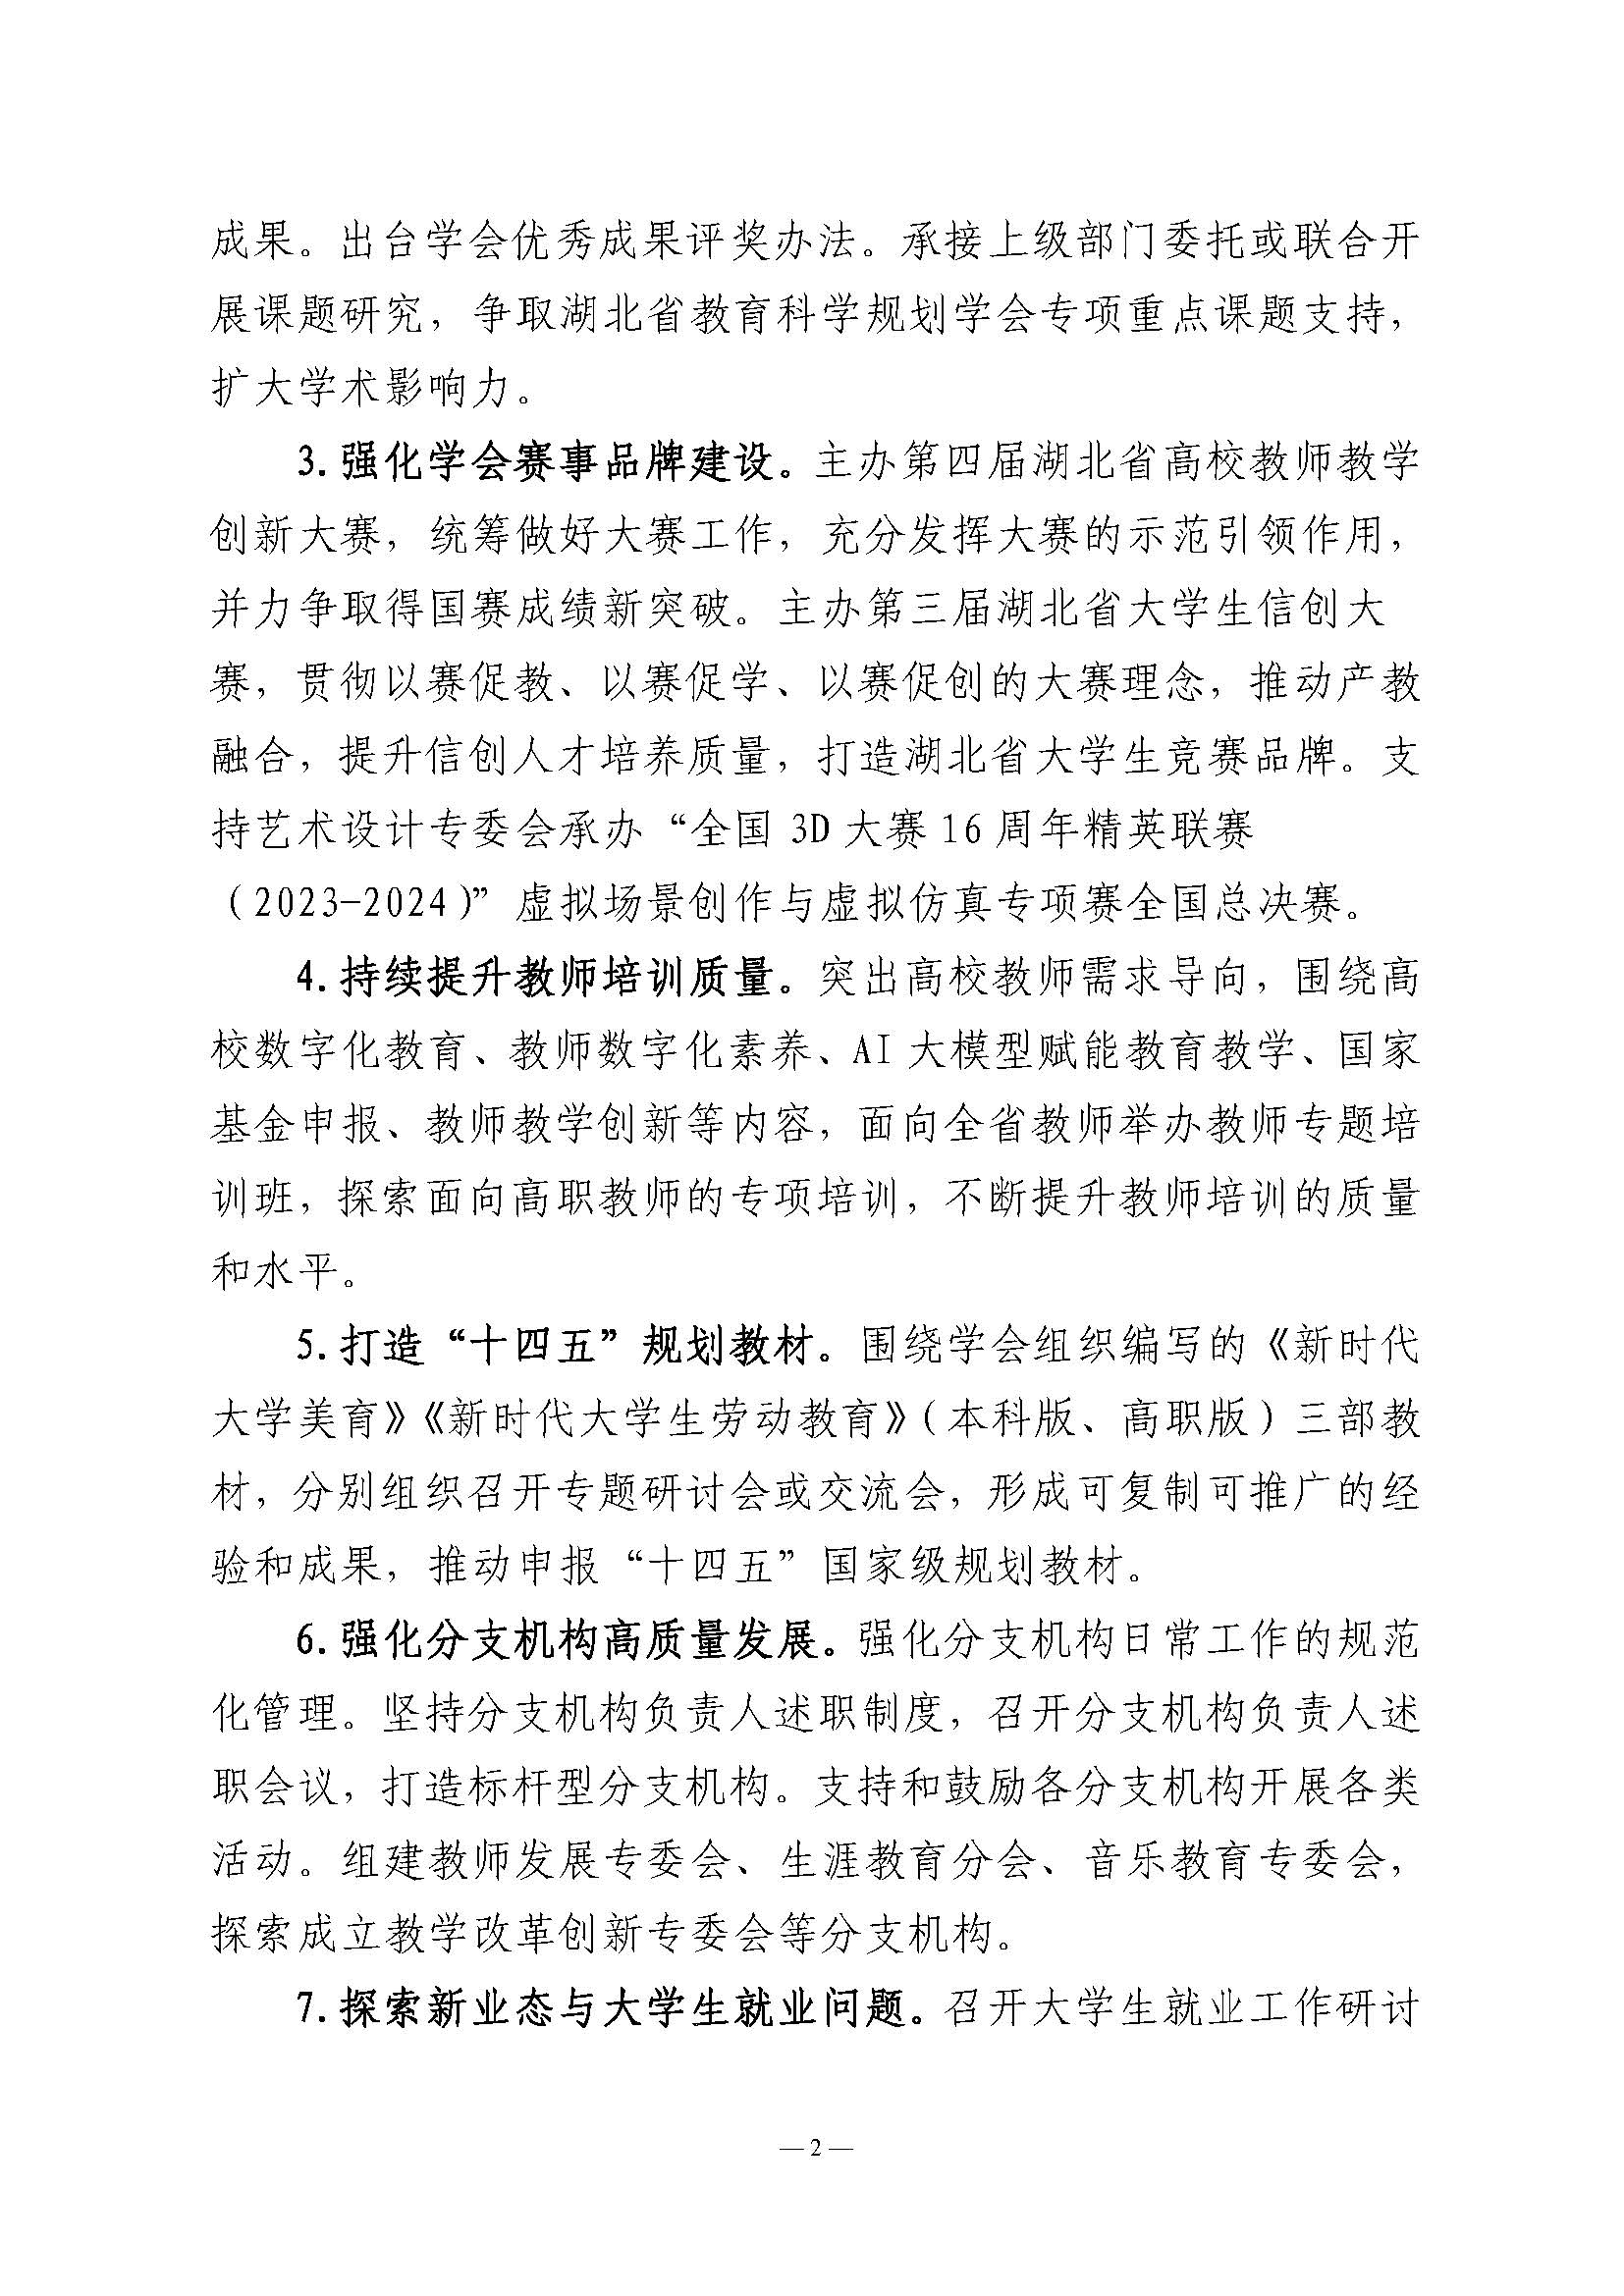 湖北省高等教育学会2024年工作要点_页面_2.jpg